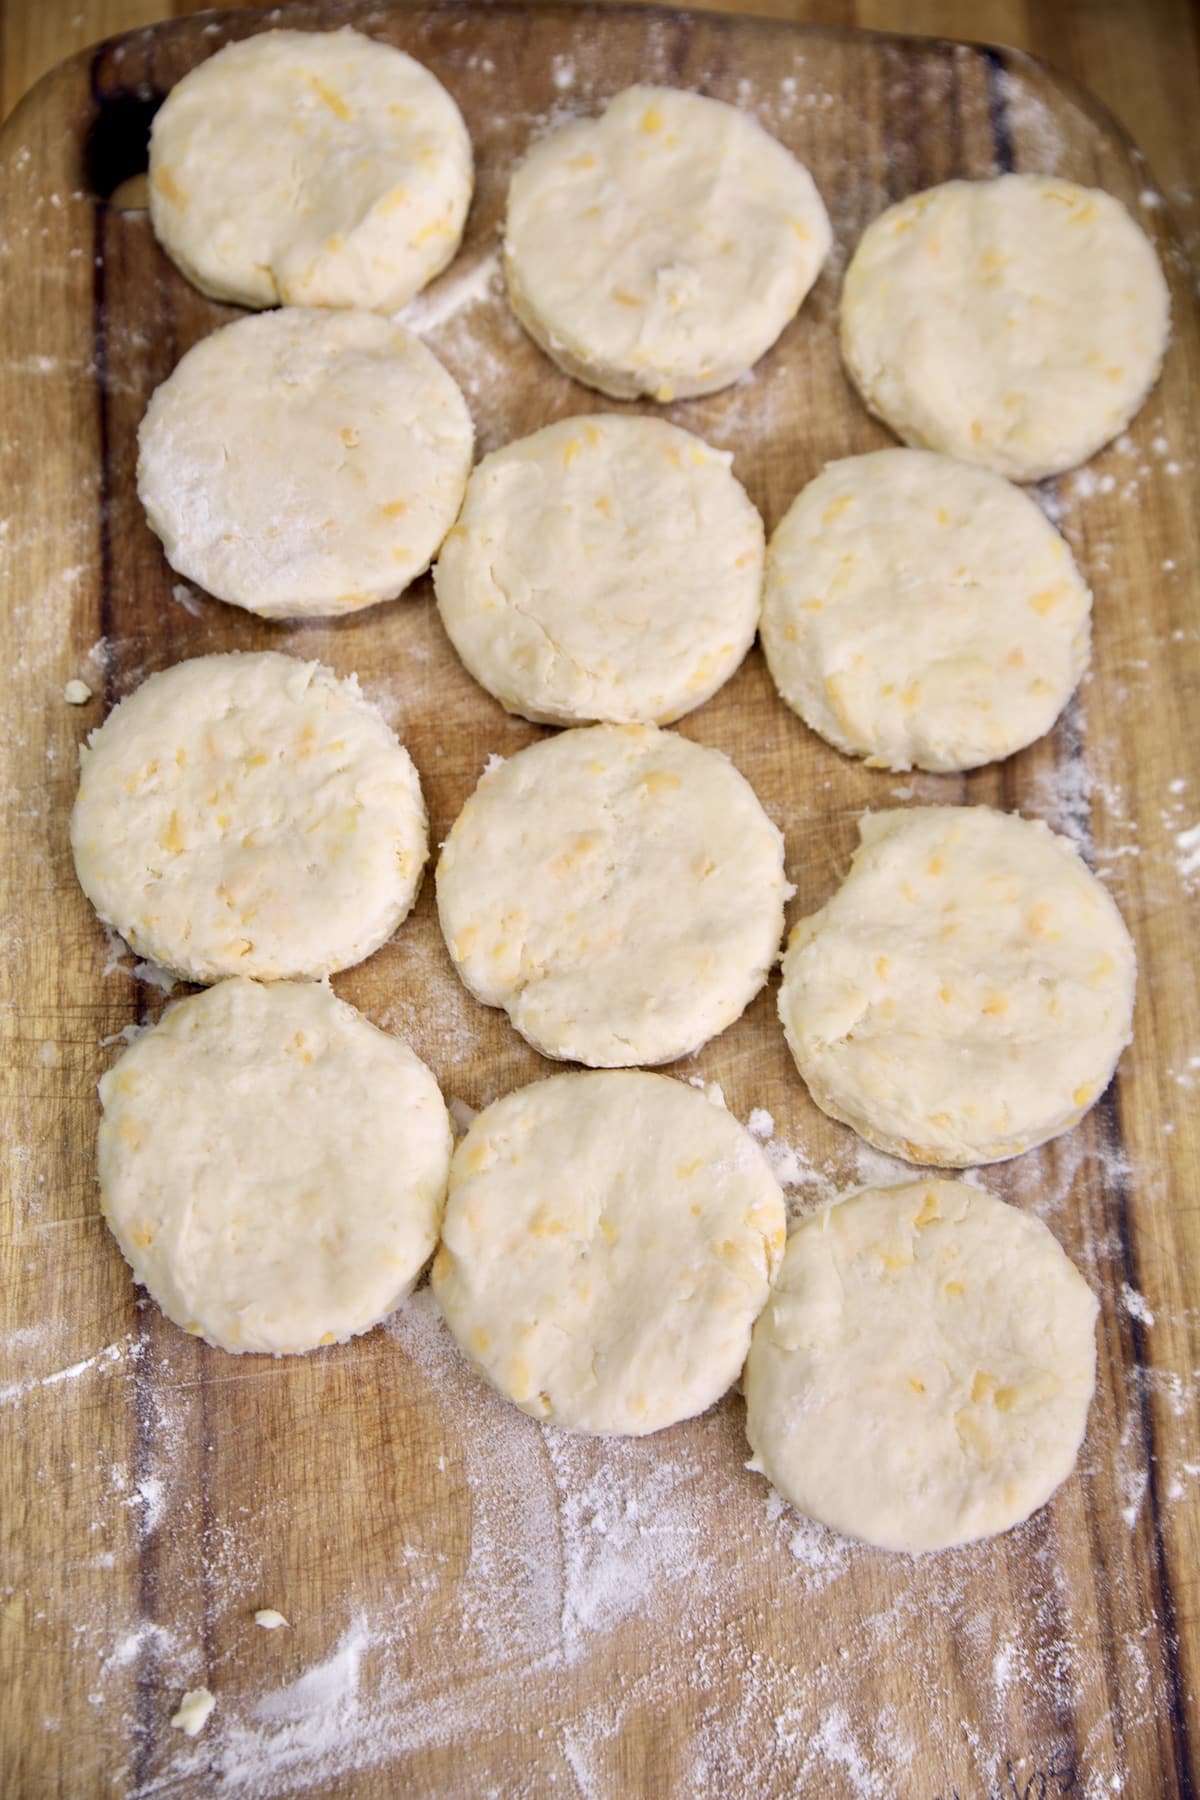 Cheddar bay biscuits for chicken casserole.